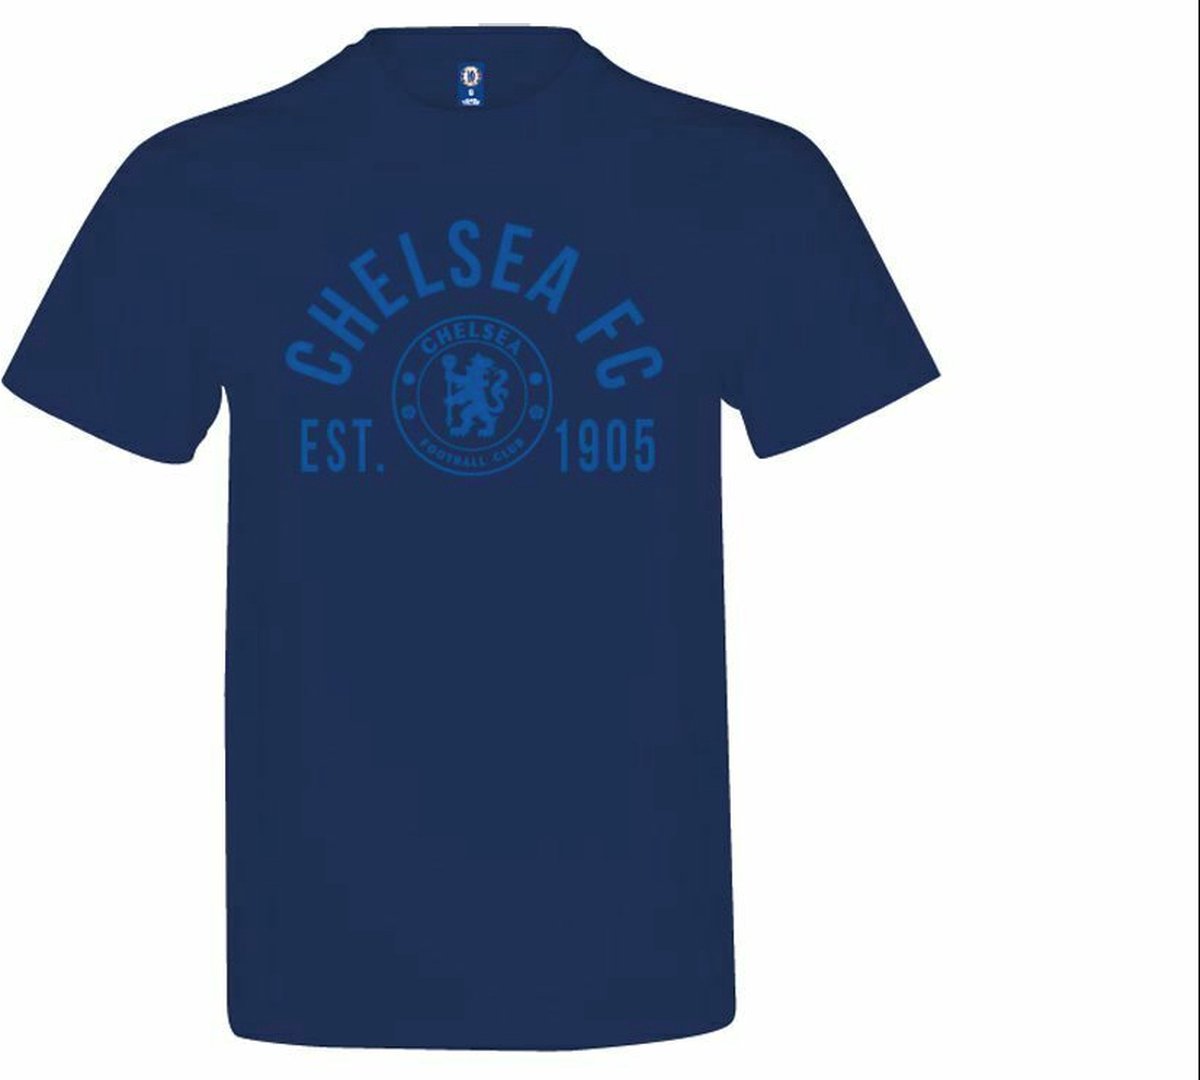 Chelsea T-Shirt Navy Blue Maat XL